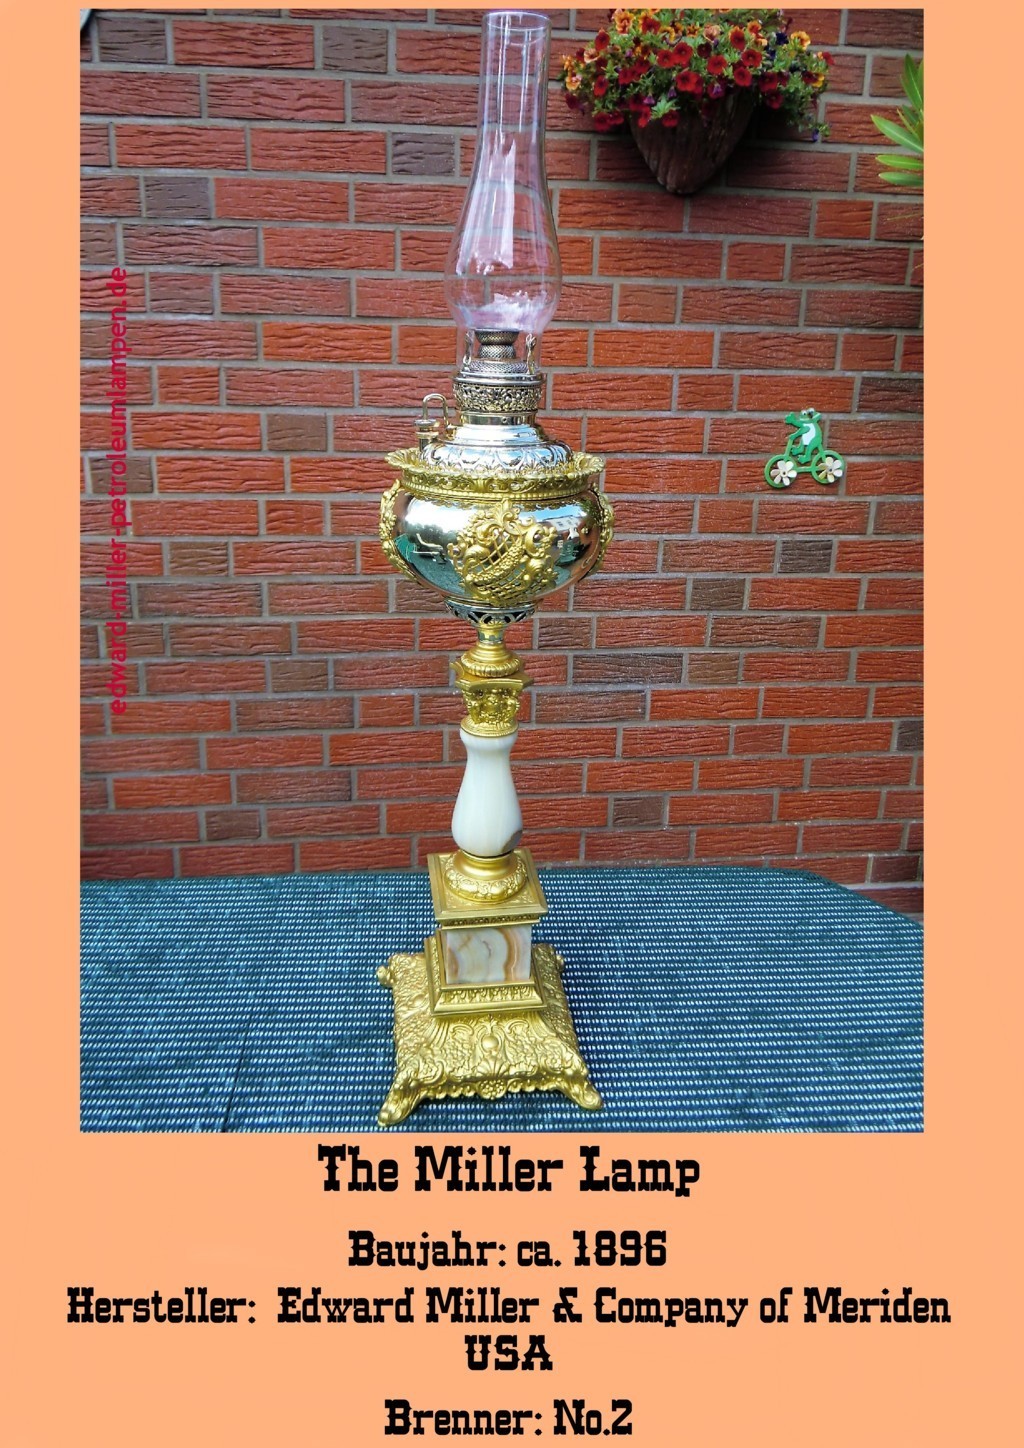 Edward Miller Kerosene Lamp